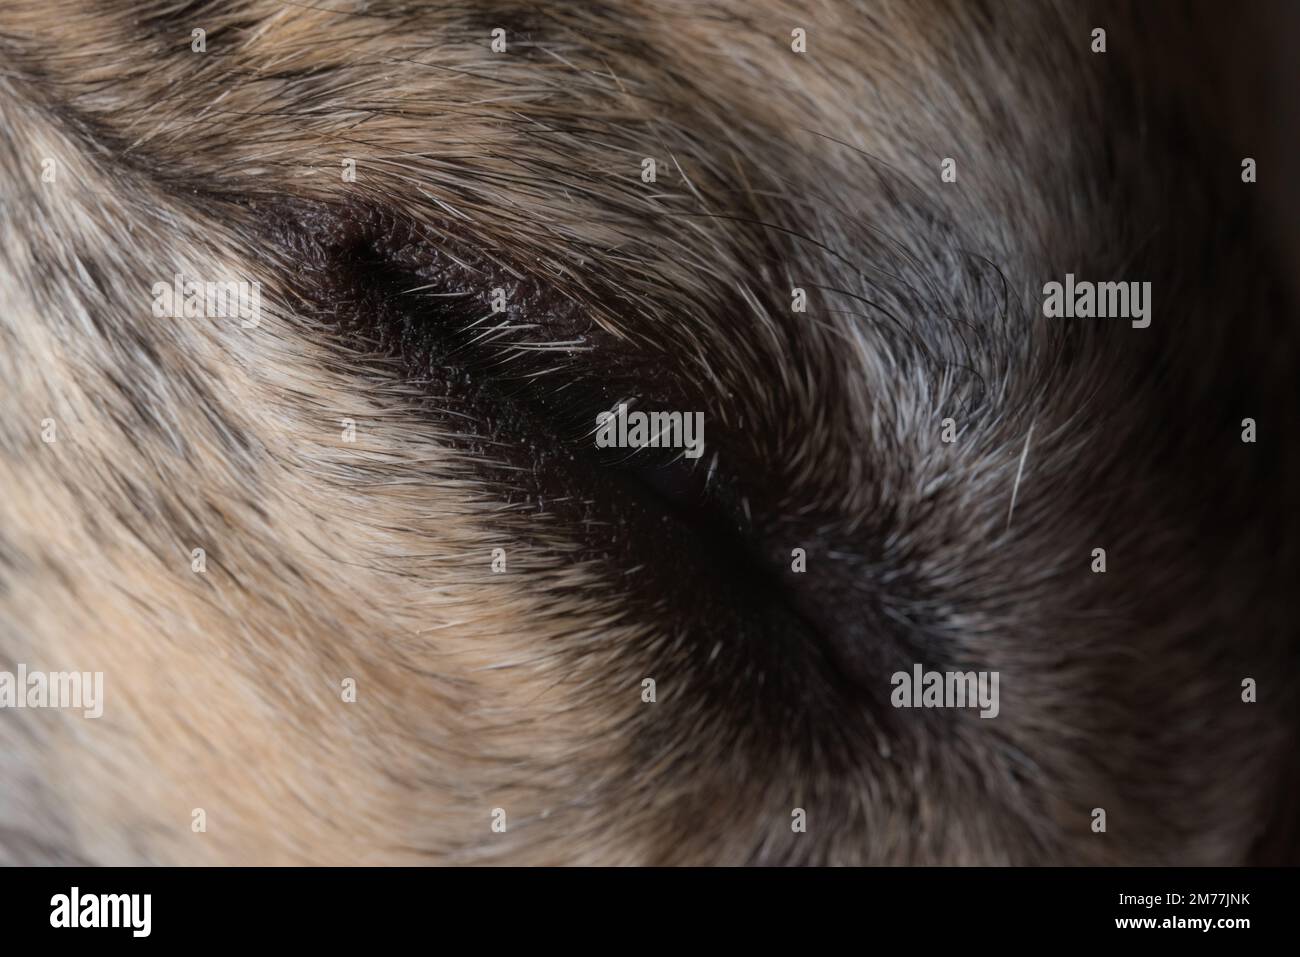 Schlafender Windhund mit geschlossenem Auge. Wimpern und Pelzdetails, super Makro. Vollformatbild der Fellstruktur, die dieses müde Hundeauge umgibt. Stockfoto